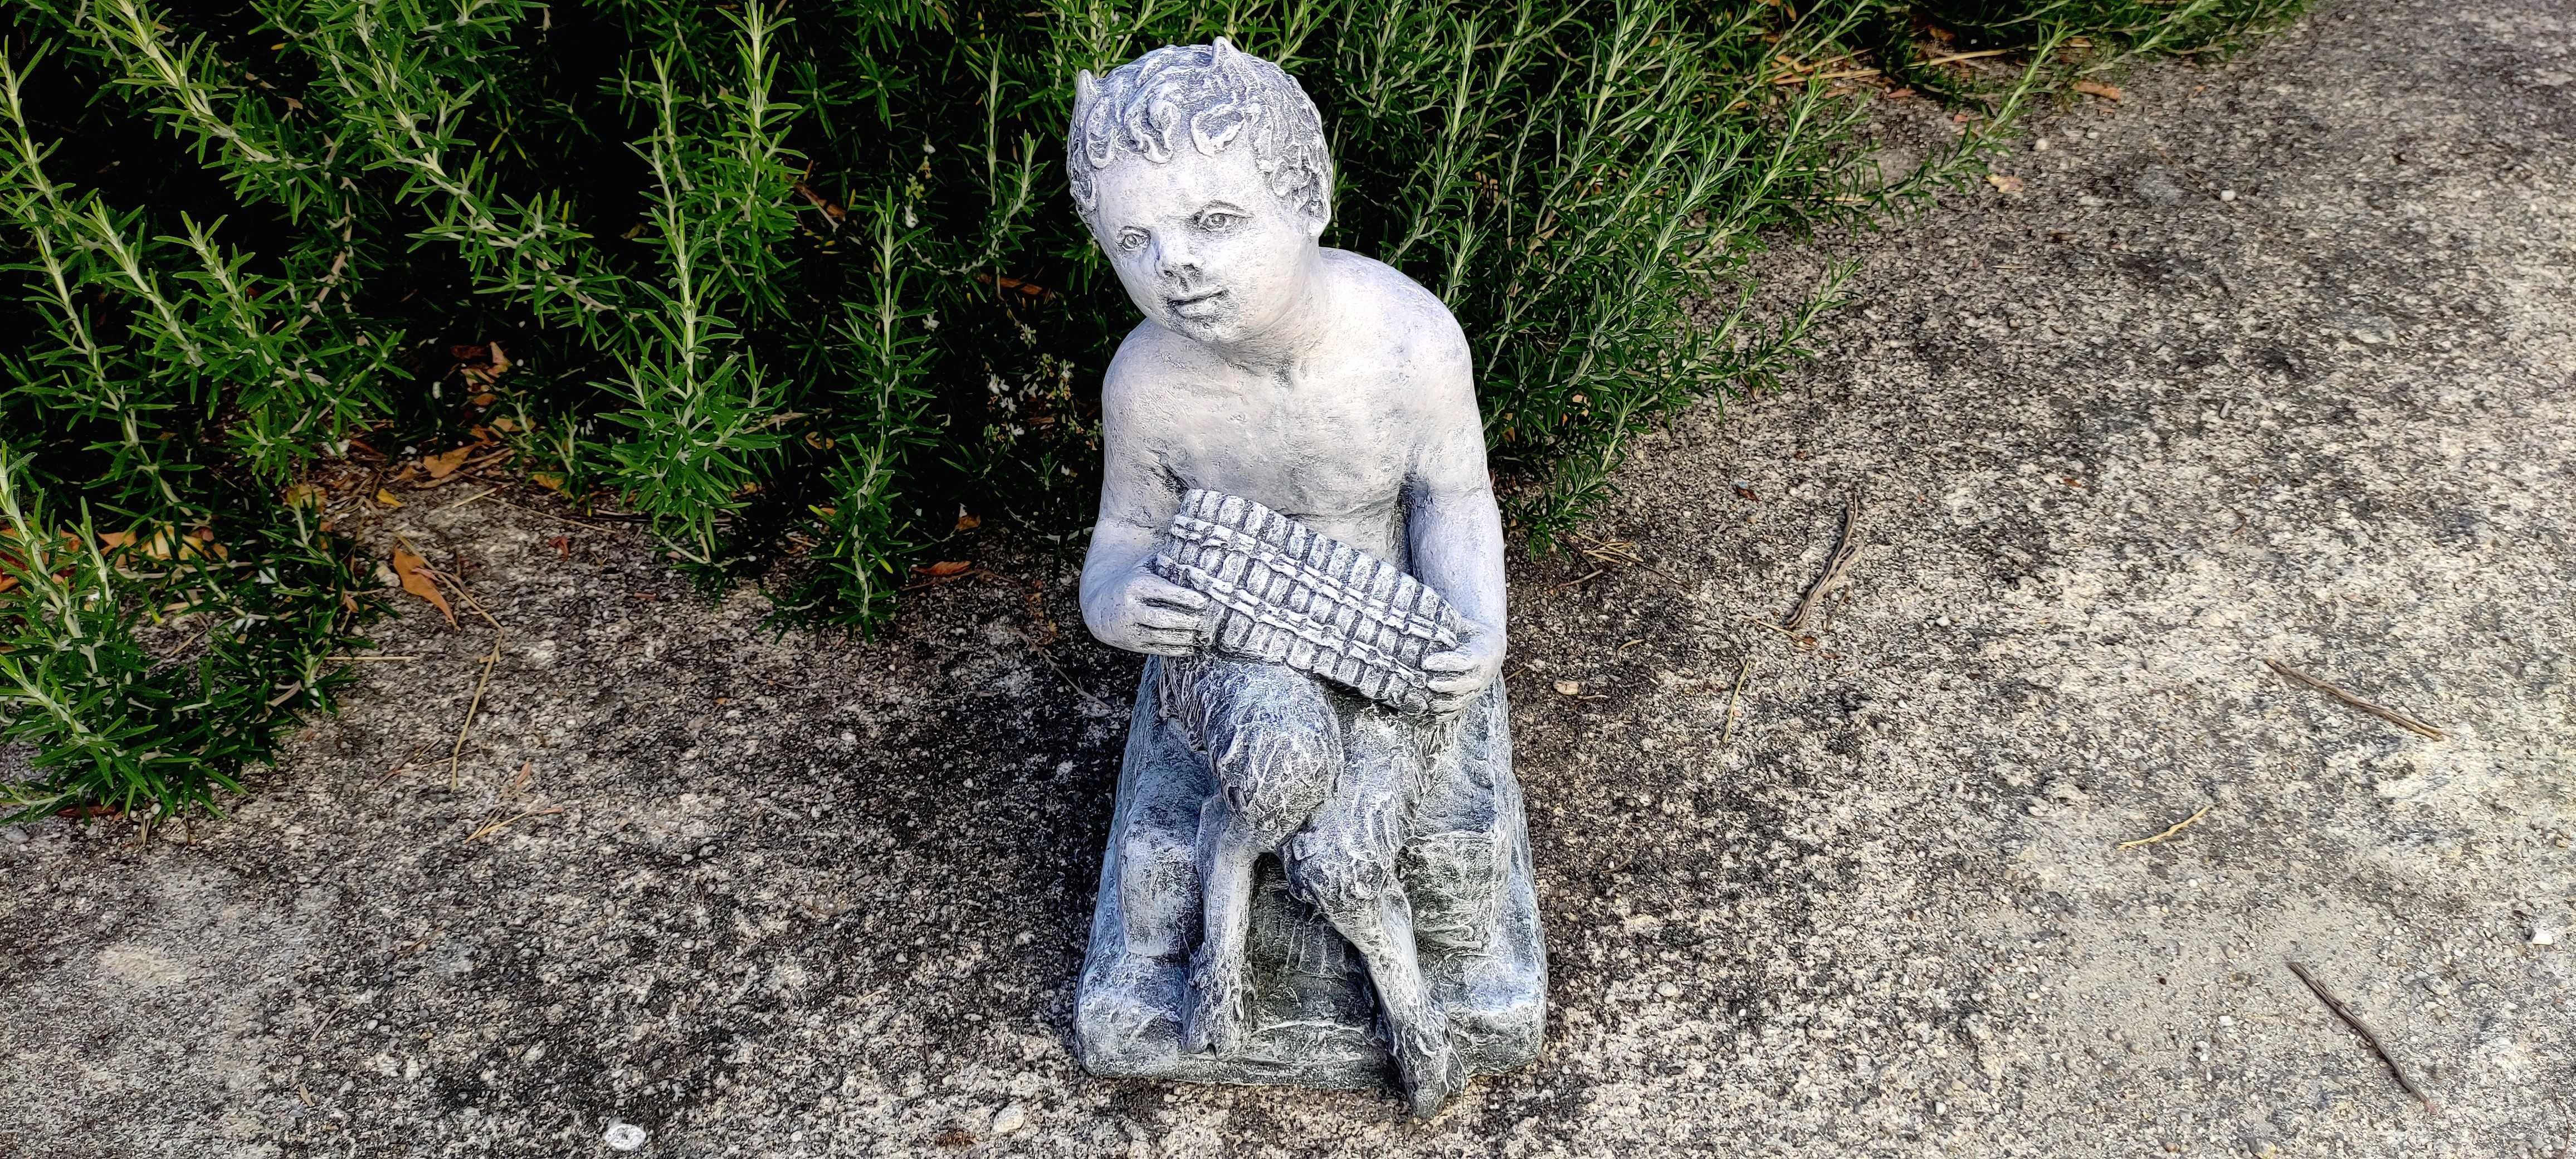 Pã (deus dos bosques) - decoração em pedra